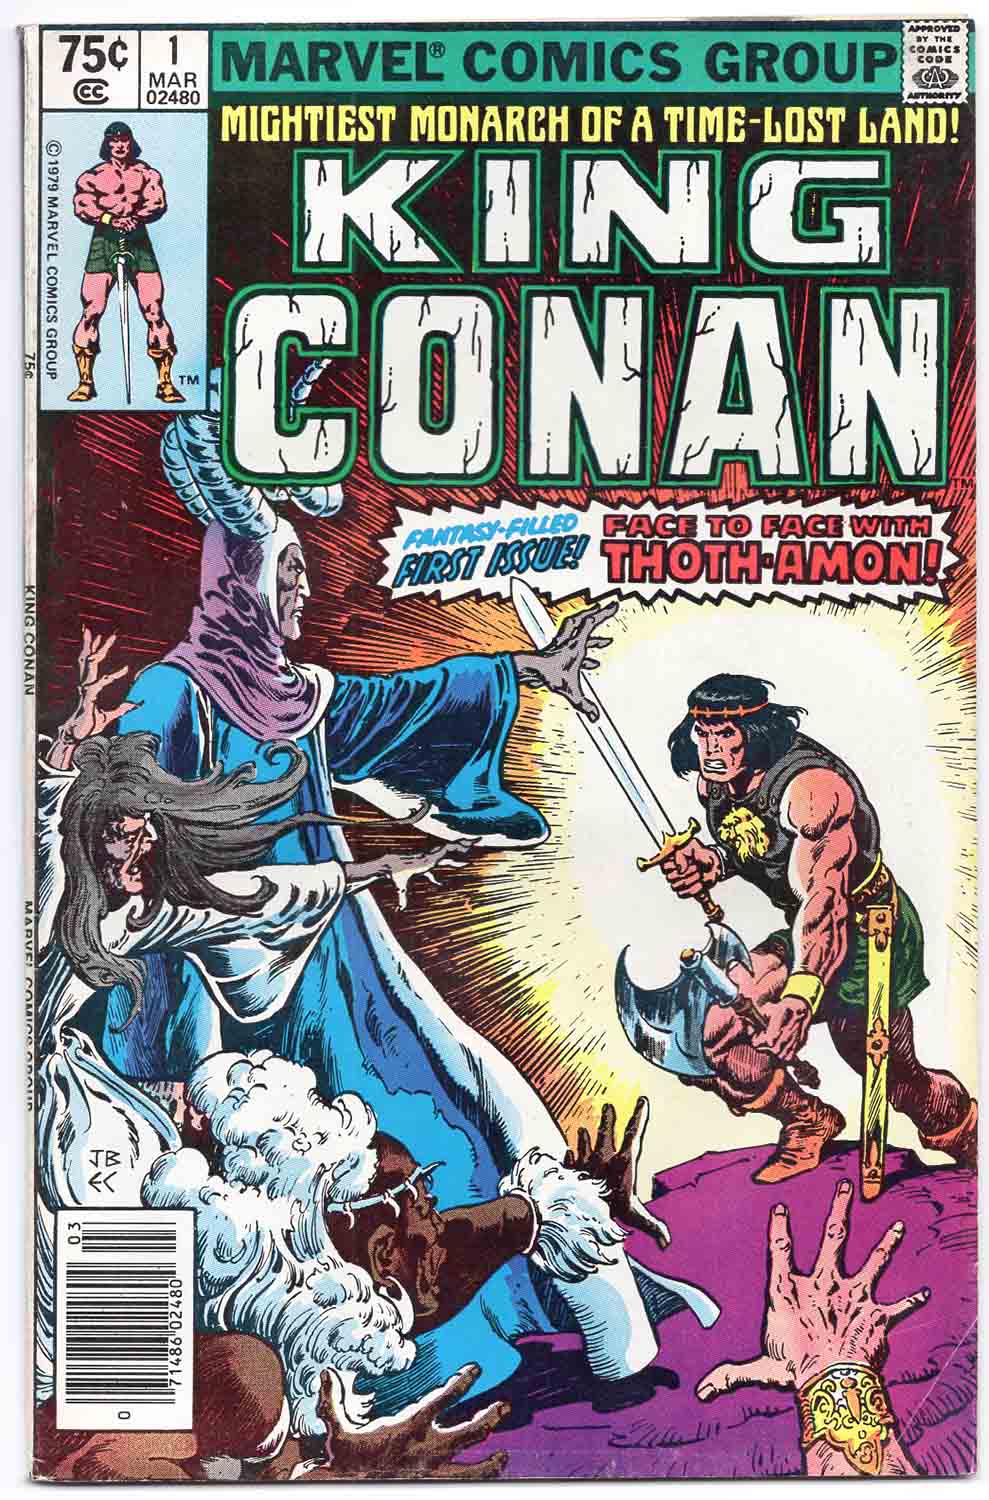 King Conan #1